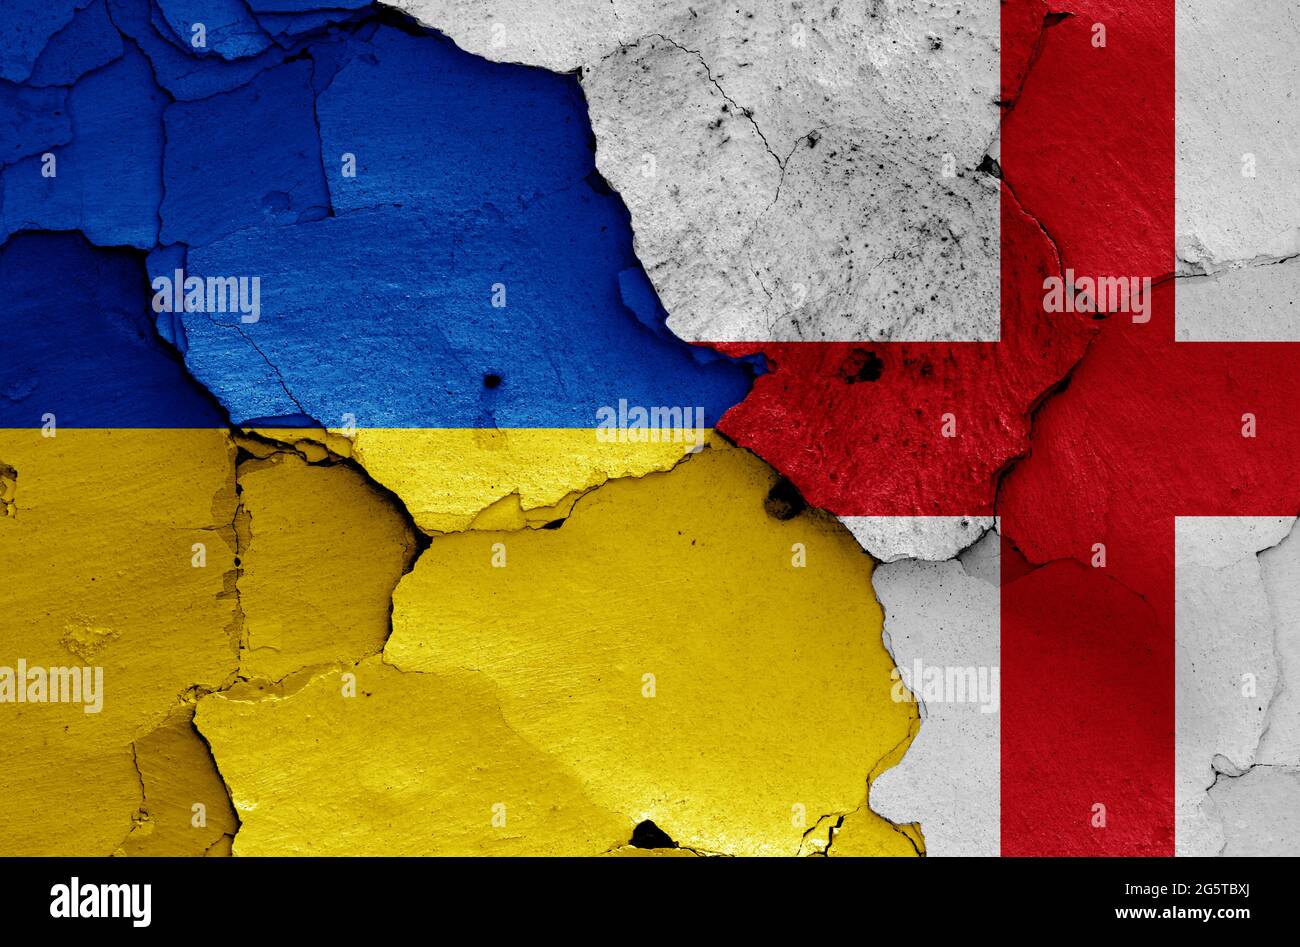 Drapeaux de l'Ukraine et de l'Angleterre peints sur le mur fissuré Banque D'Images